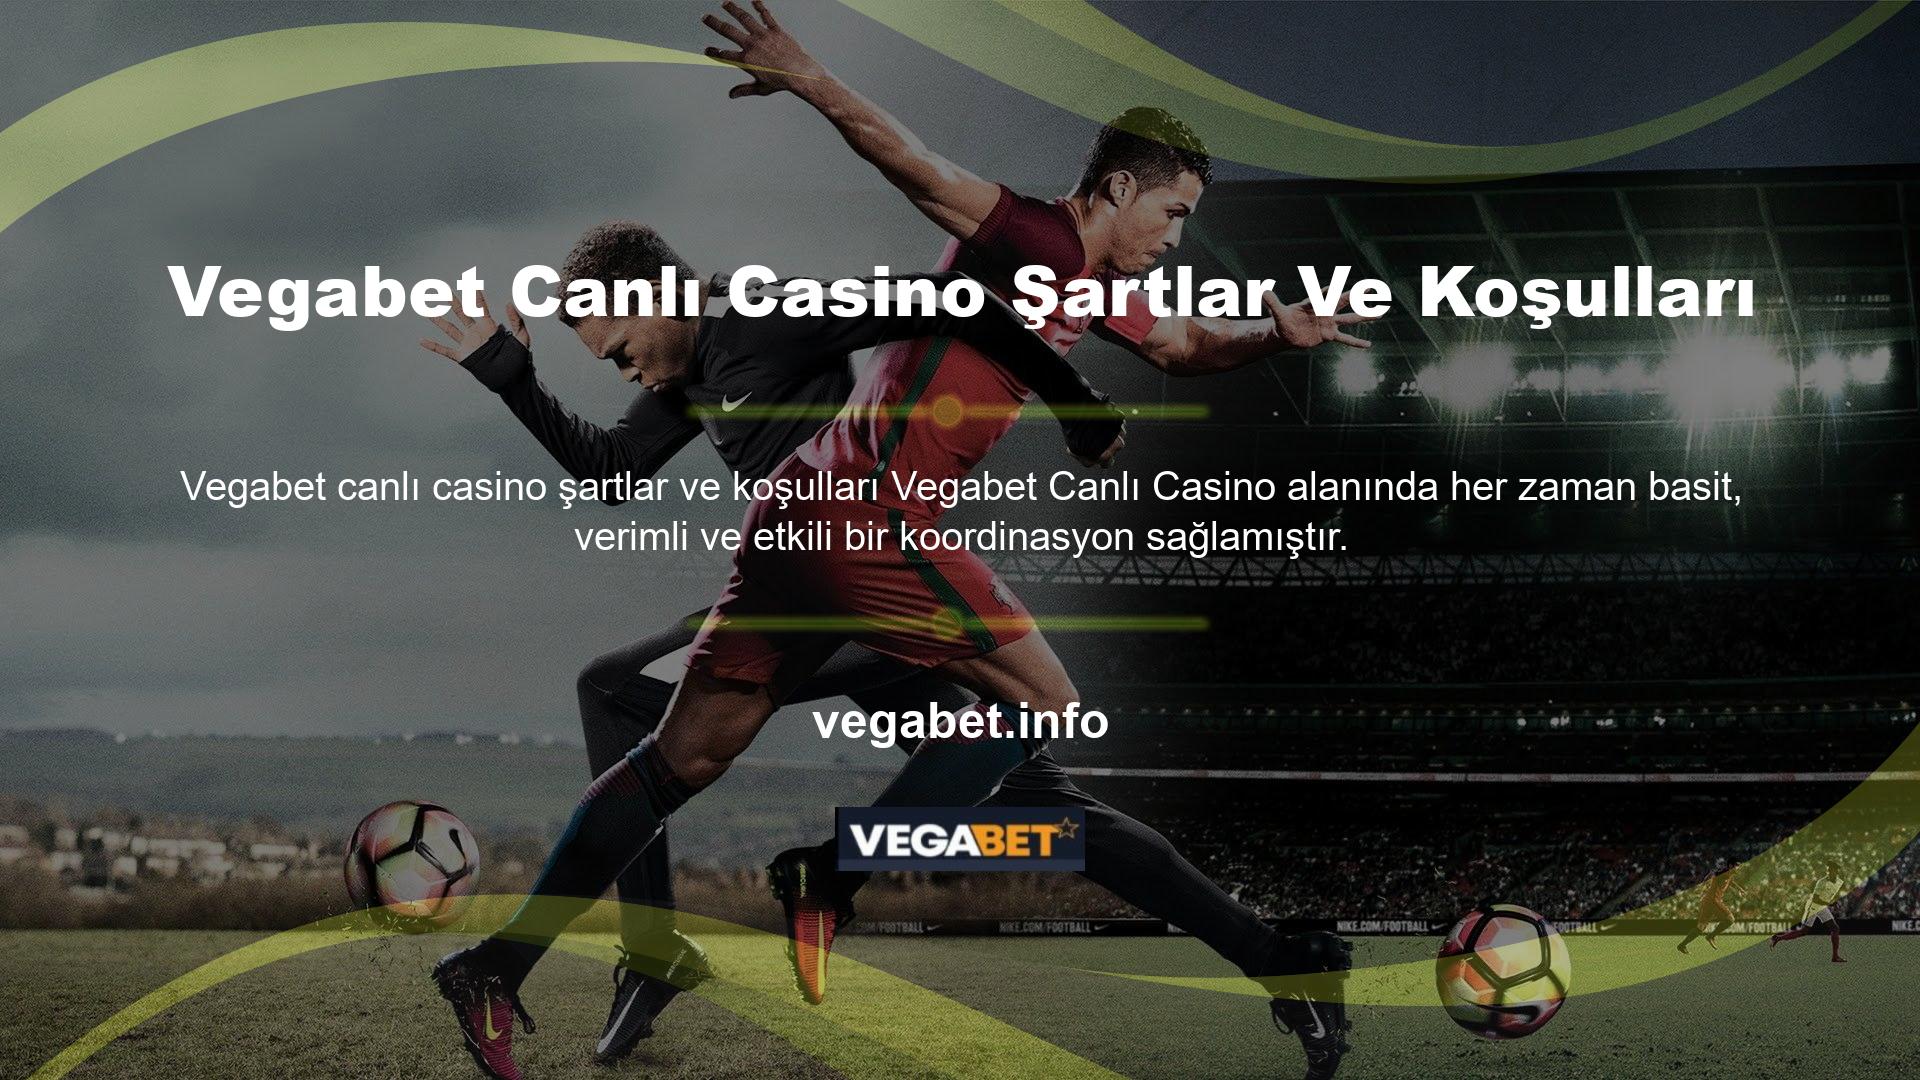 Vegabet Canlı Casino Şartlar ve Koşullarının bu koordinatları ile her duruma uygun, basit, başarılı ve detaylı bir sistem yakalayabilirsiniz